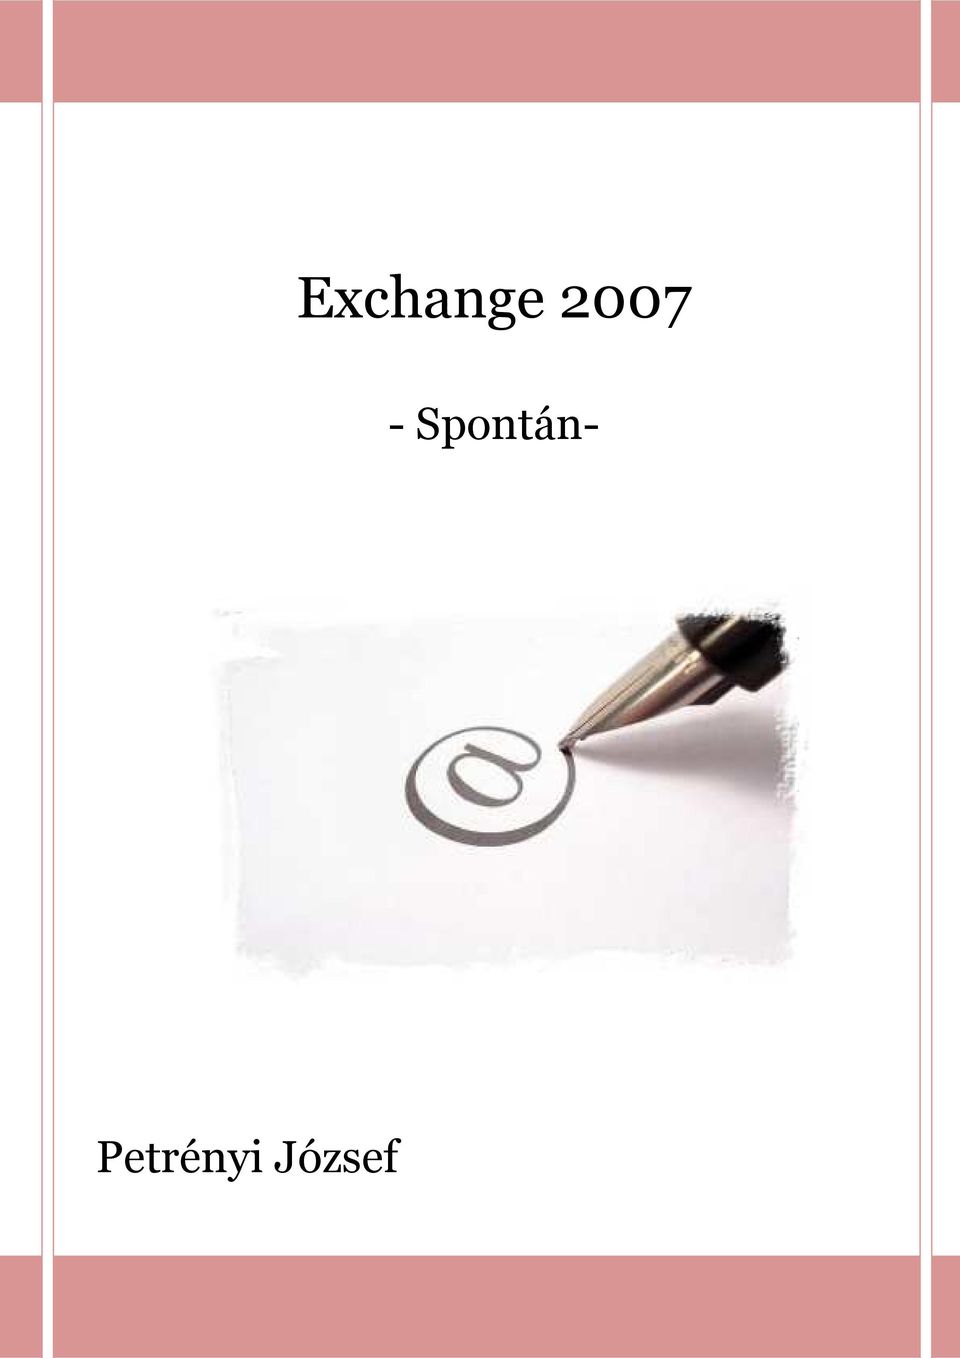 Exchange Spontán- Petrényi József - PDF Ingyenes letöltés